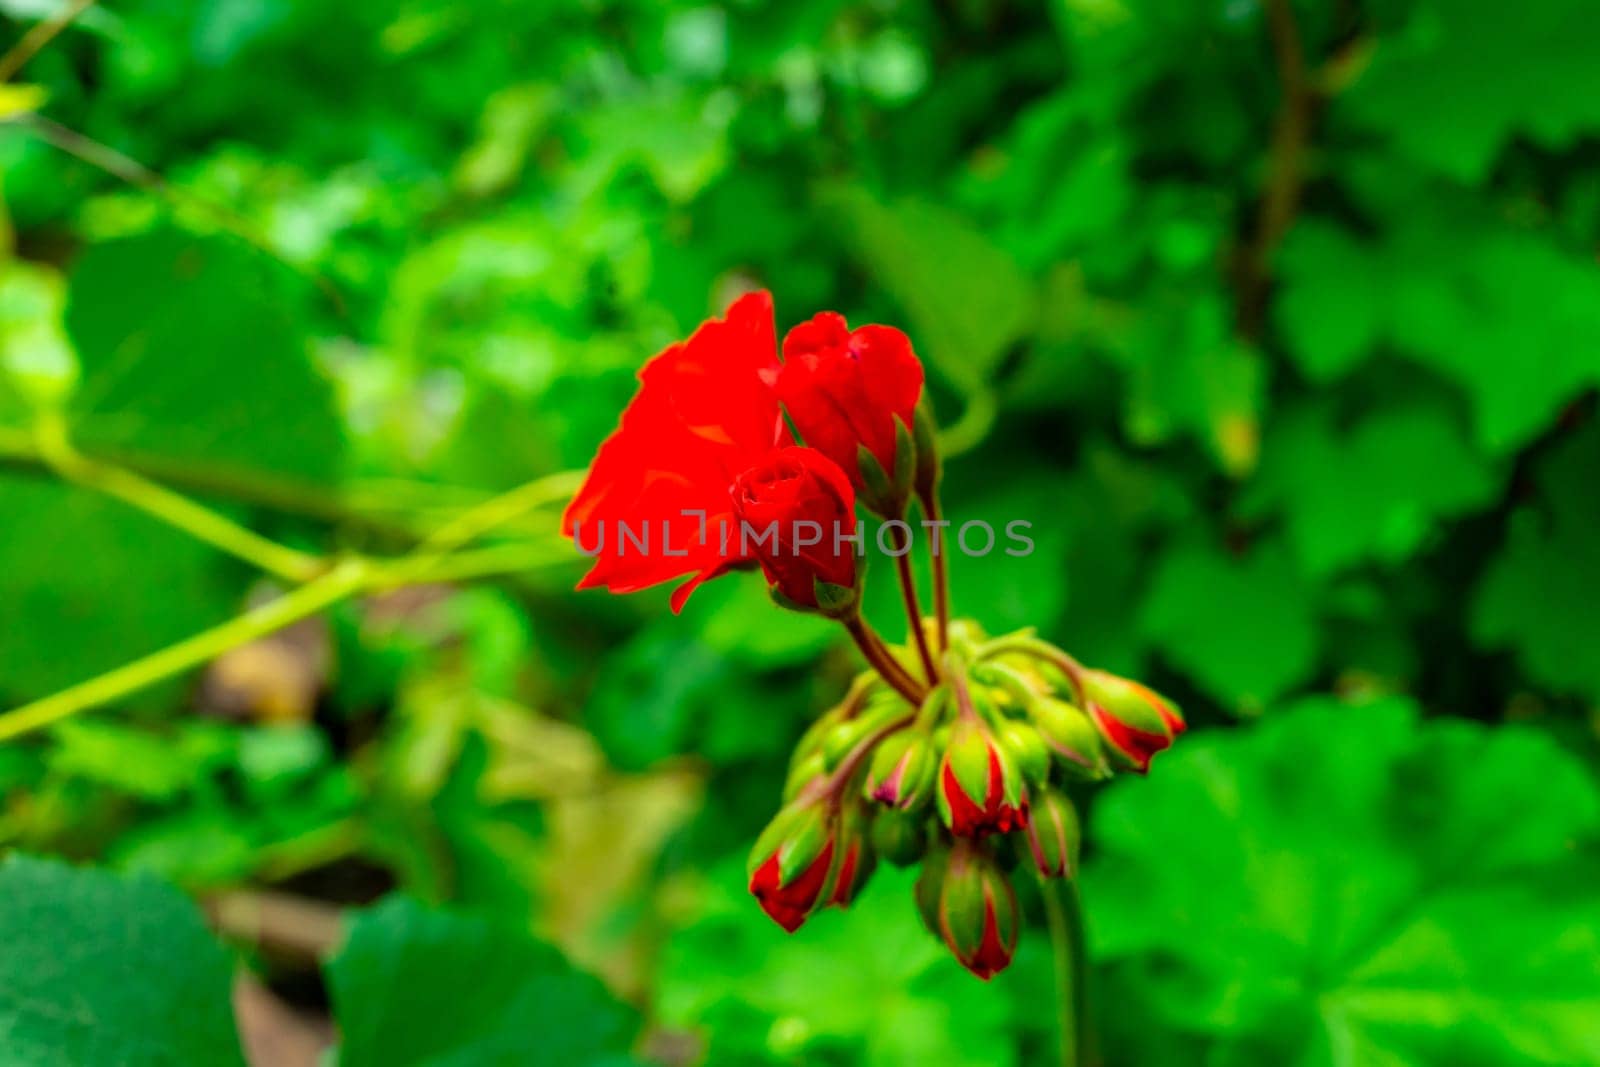 Red geranium flowers on green blurred background by Serhii_Voroshchuk